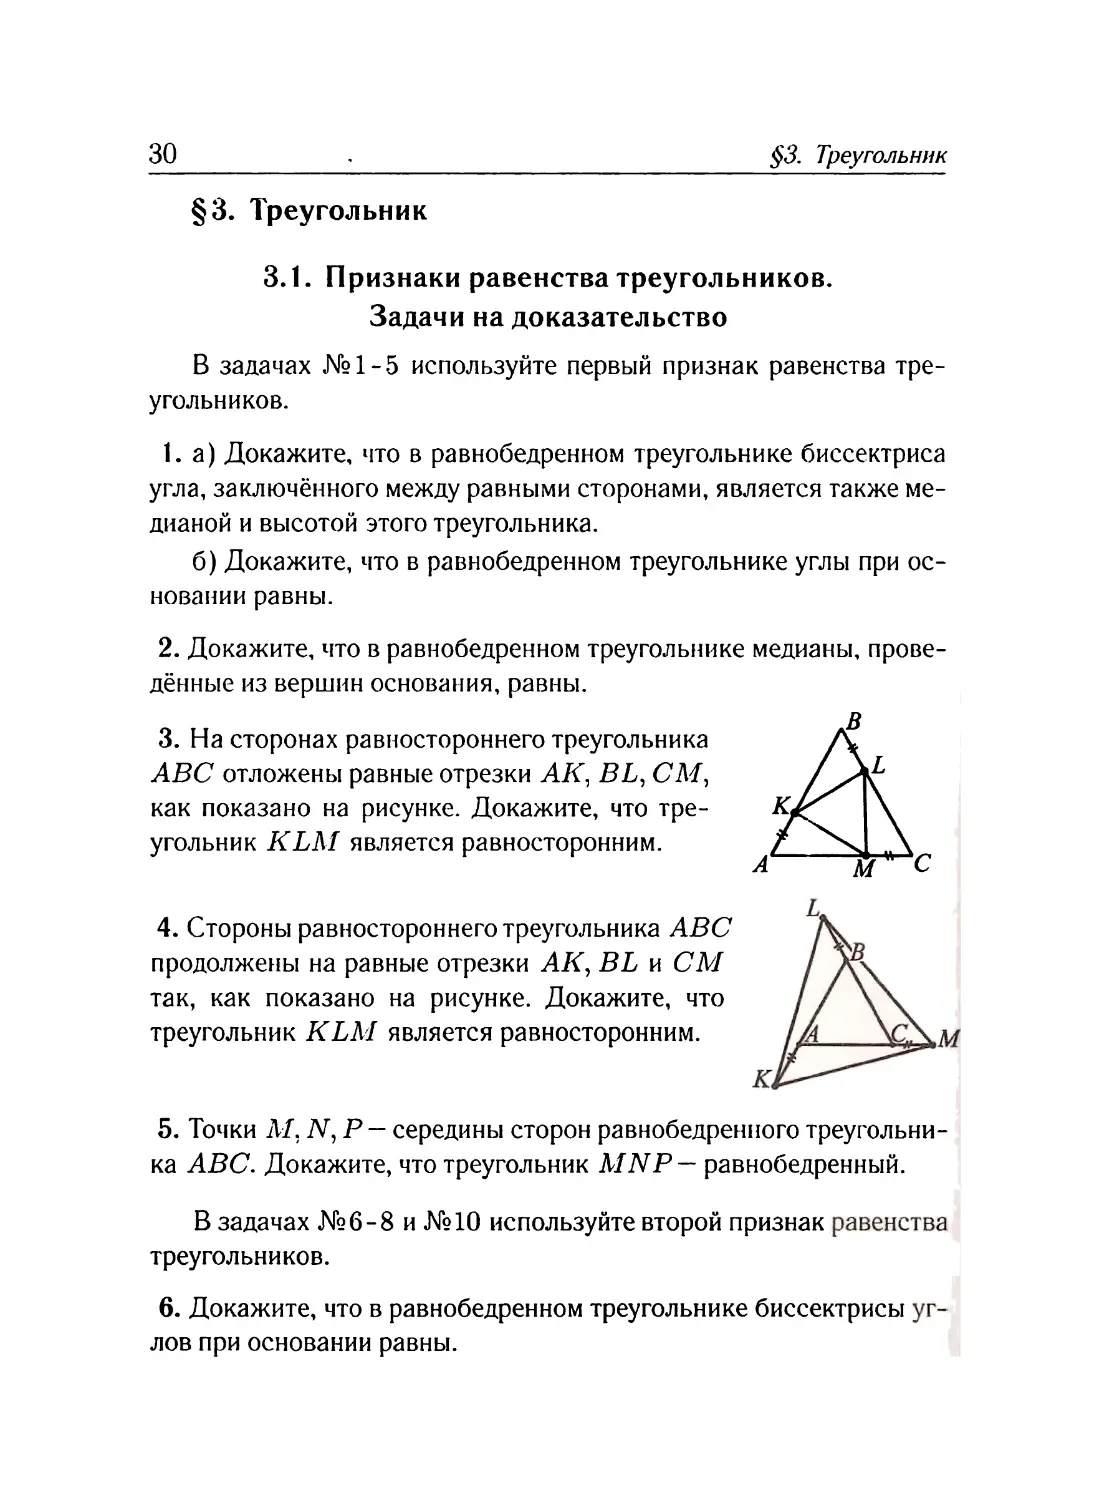 §3. Треугольник
Признаки равенства треугольников